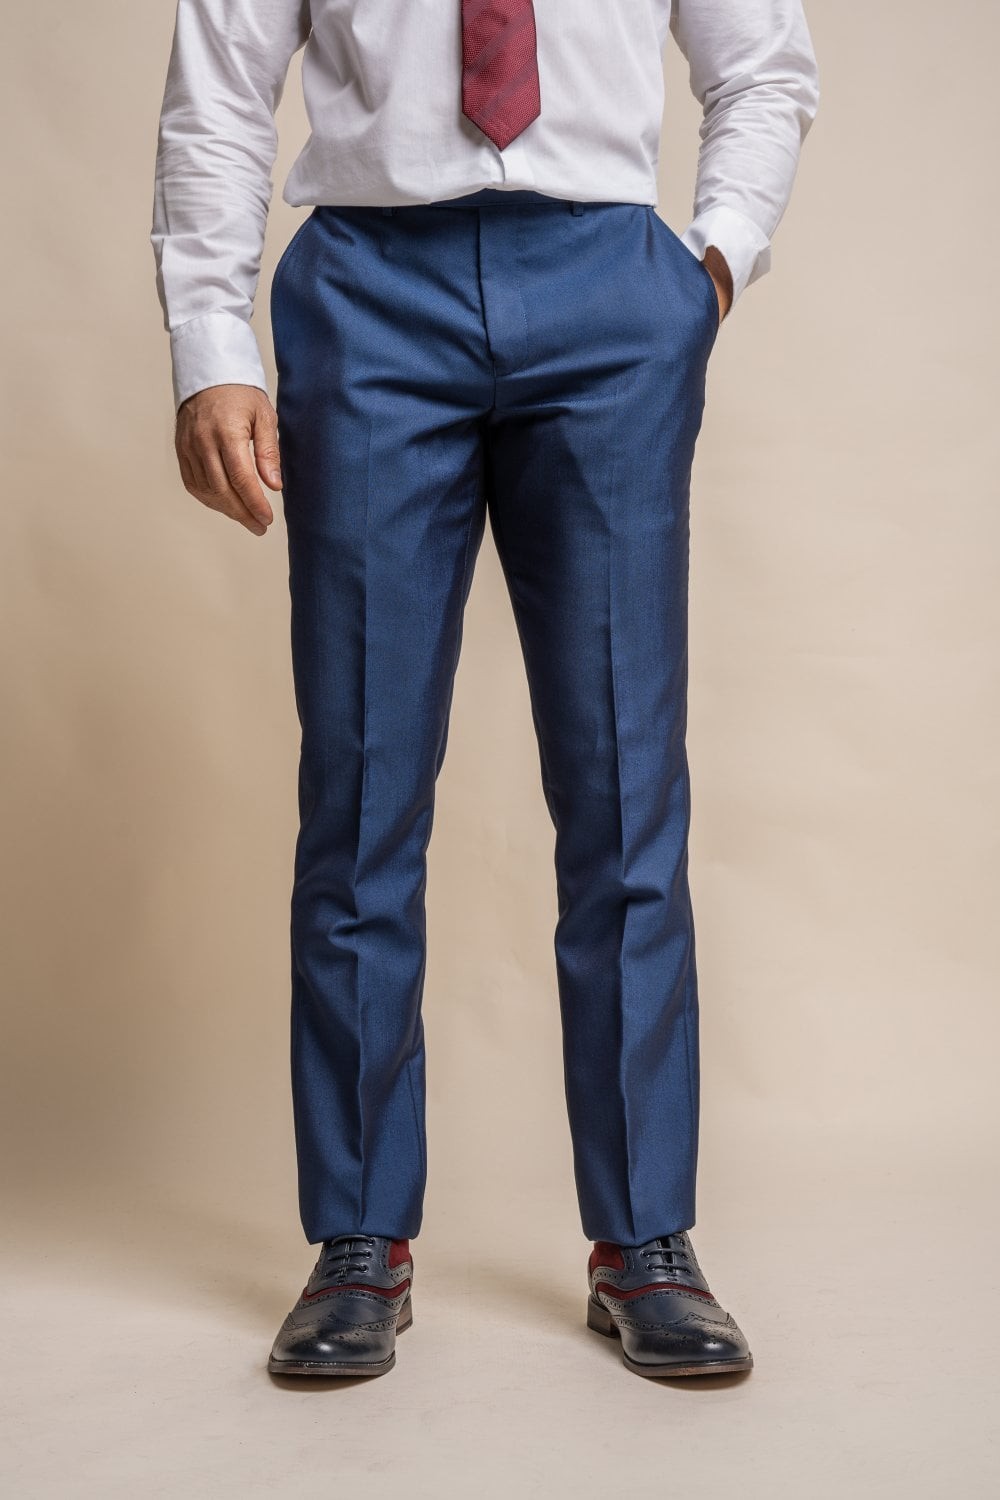 Men's Slim Fit Formal Royal Blue Pants - FORD - Royal Blue